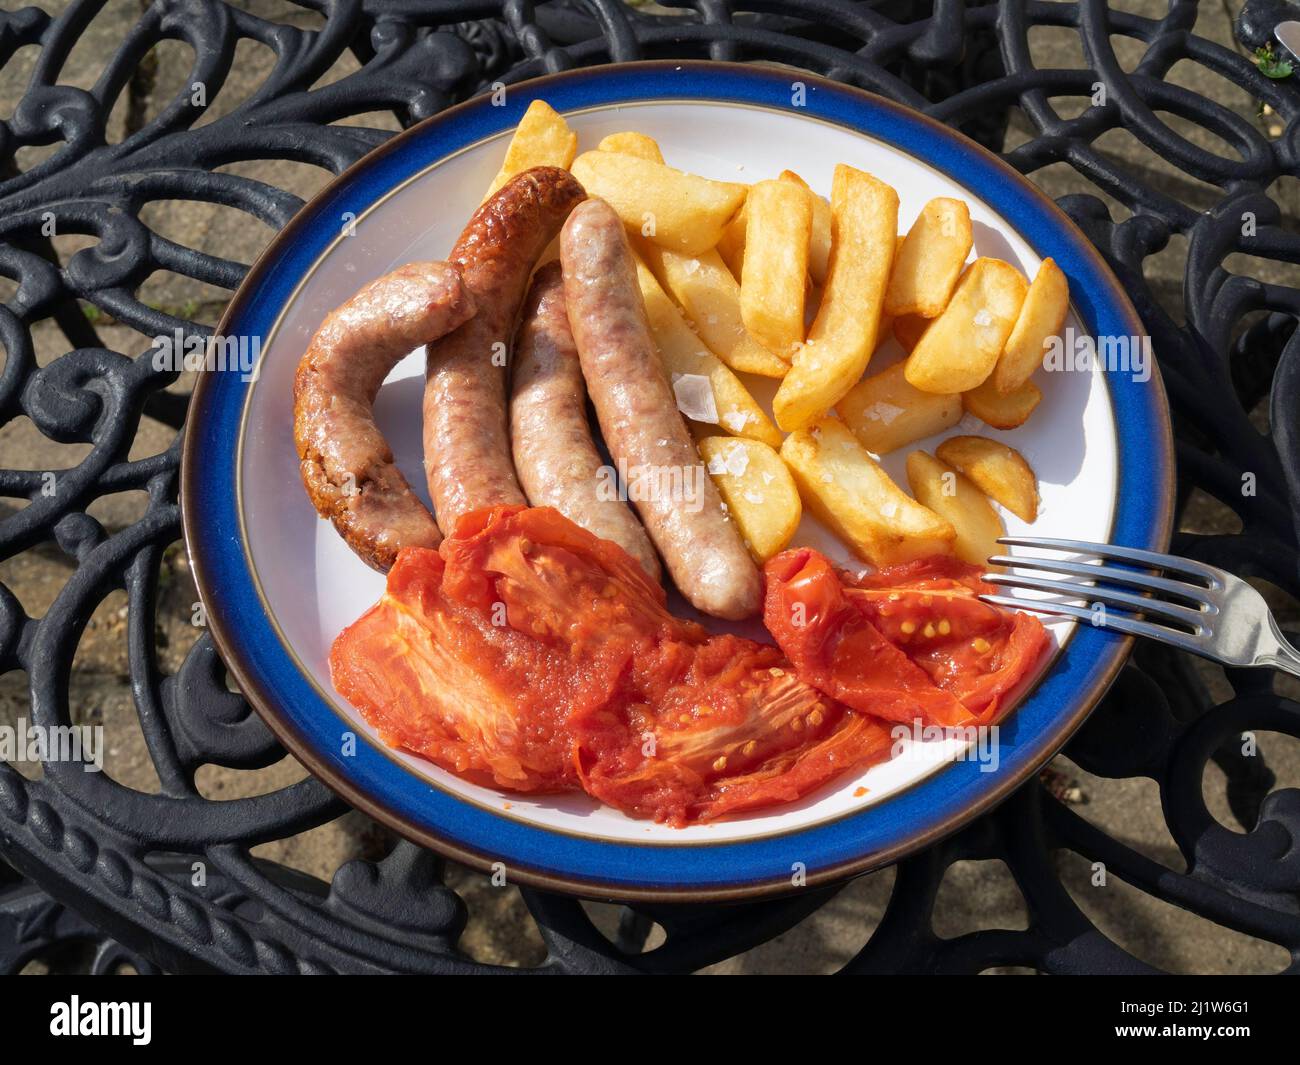 Pranzo all'aperto con le tradizionali salsicce di maiale, pomodori prugna alla griglia e patatine fritte su un piatto bianco dal bordo blu Foto Stock